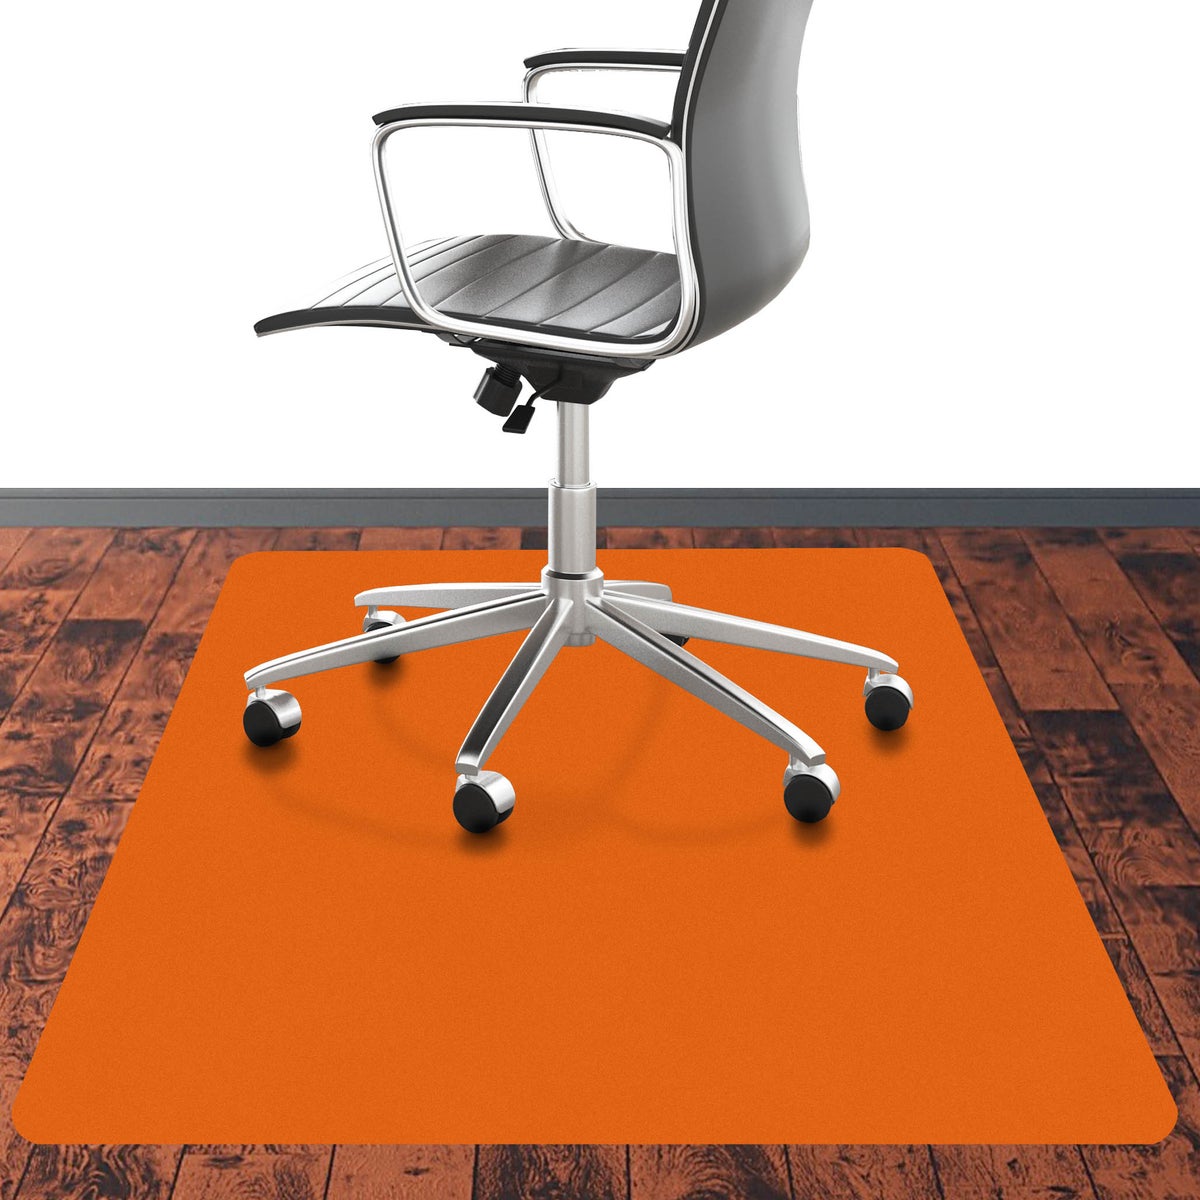 Bodenschutzmatte PE CHROMA - Orange - 90x120 cm - Hartboden - Bunte Schutzmatte als Unterlage für Bürostuhl